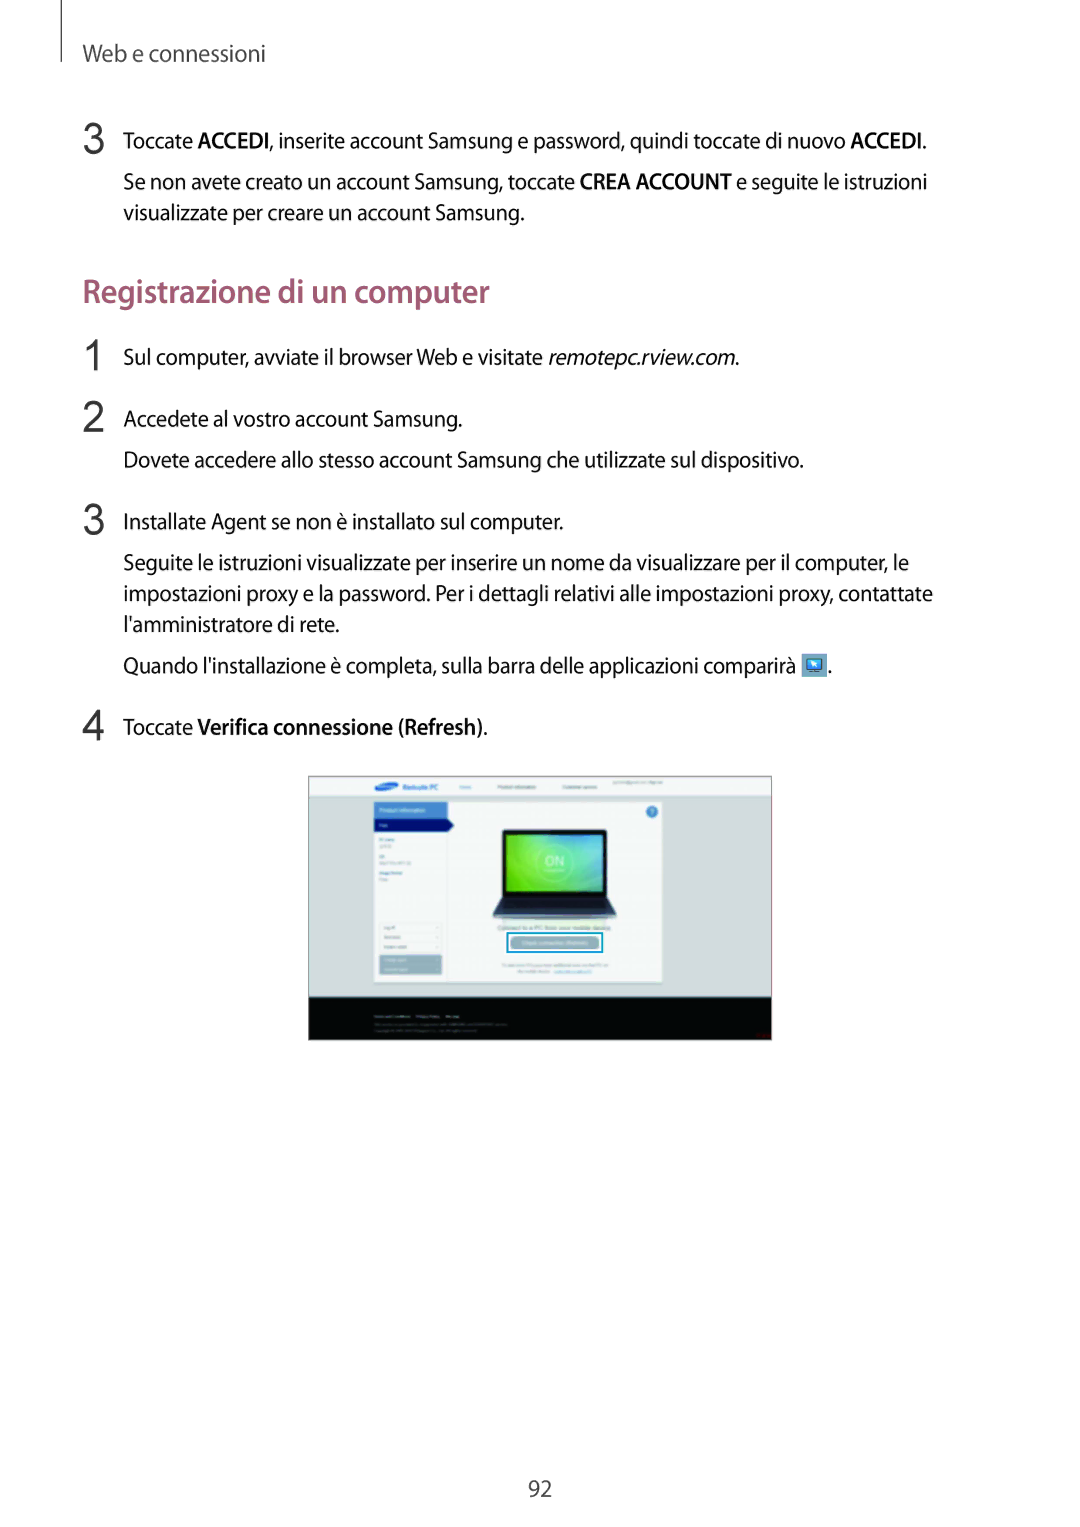 Samsung SM-P9050ZKAXEO, SM-P9050ZWYITV, SM-P9050ZKAITV Registrazione di un computer, Toccate Verifica connessione Refresh 